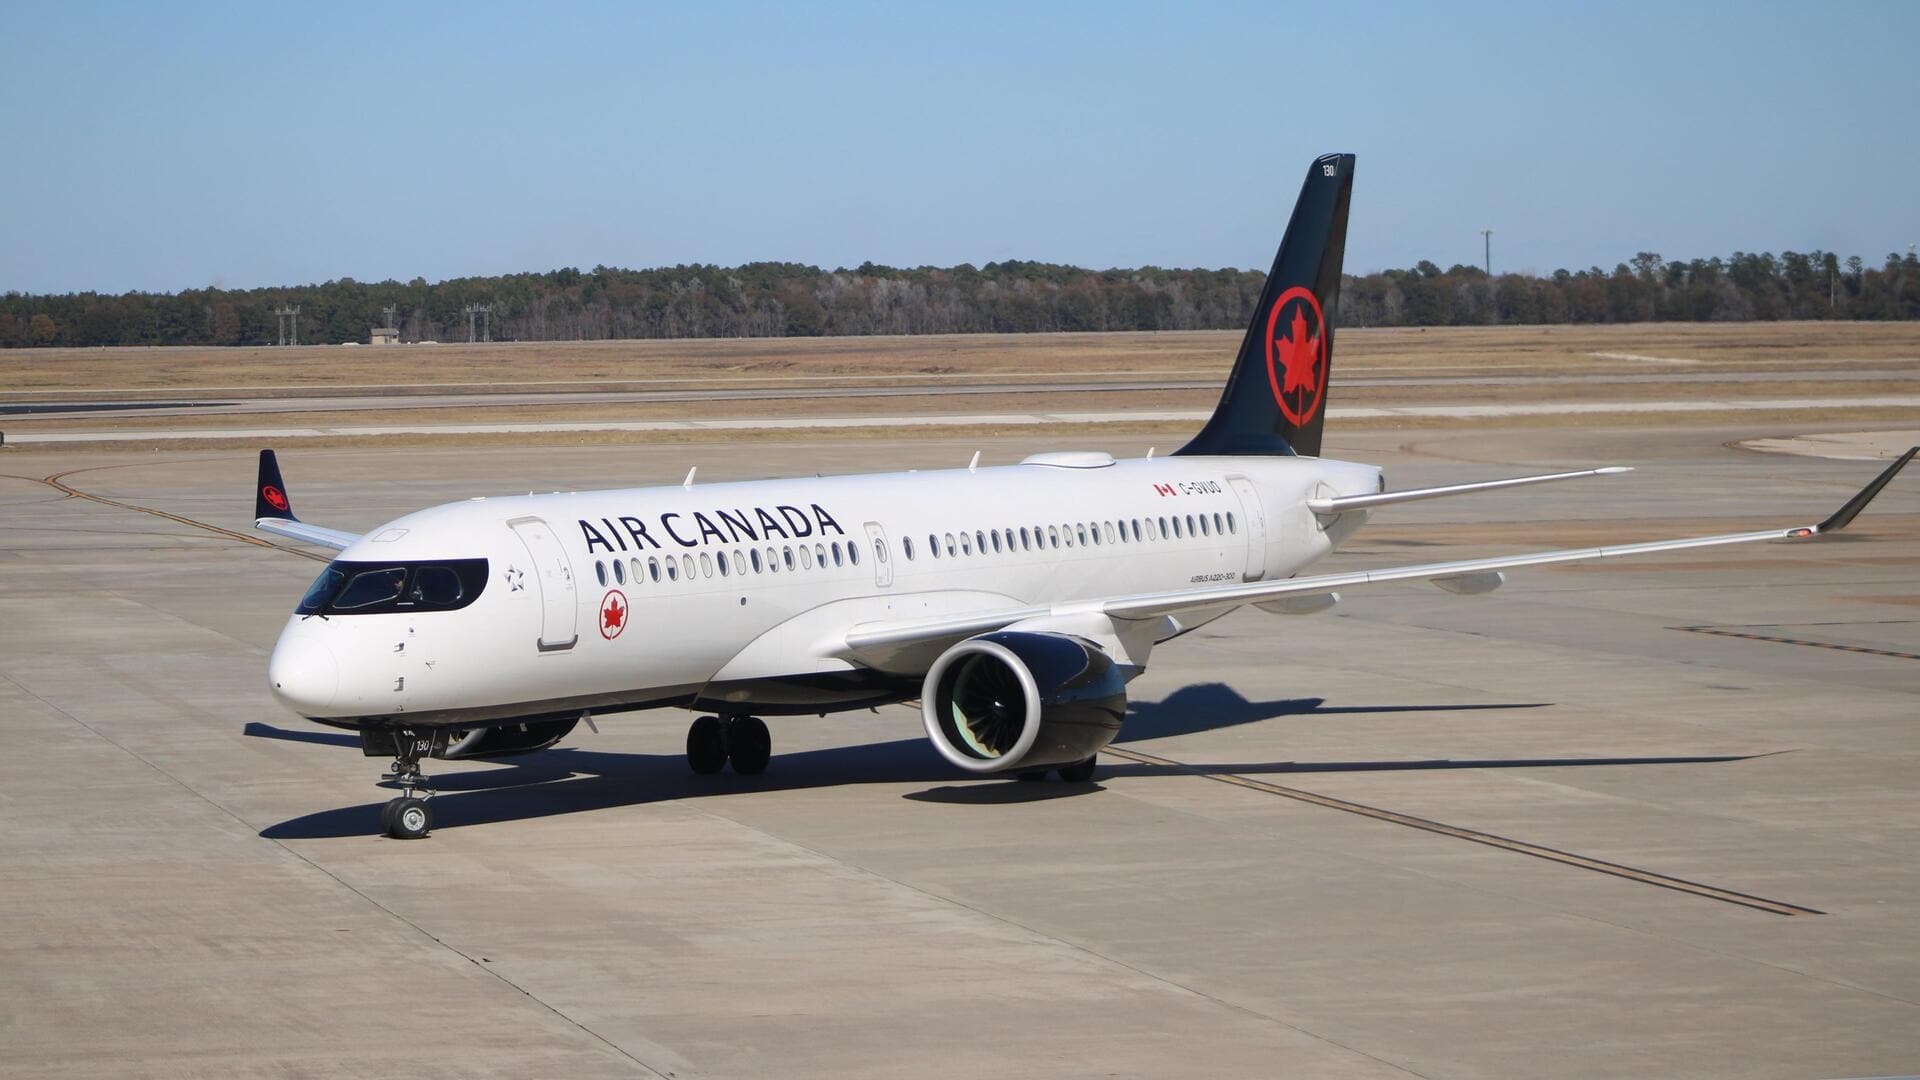 कनाडा: उड़ान भरने से ठीक पहले एयर कनाडा के विमान से कूदा यात्री, घायल